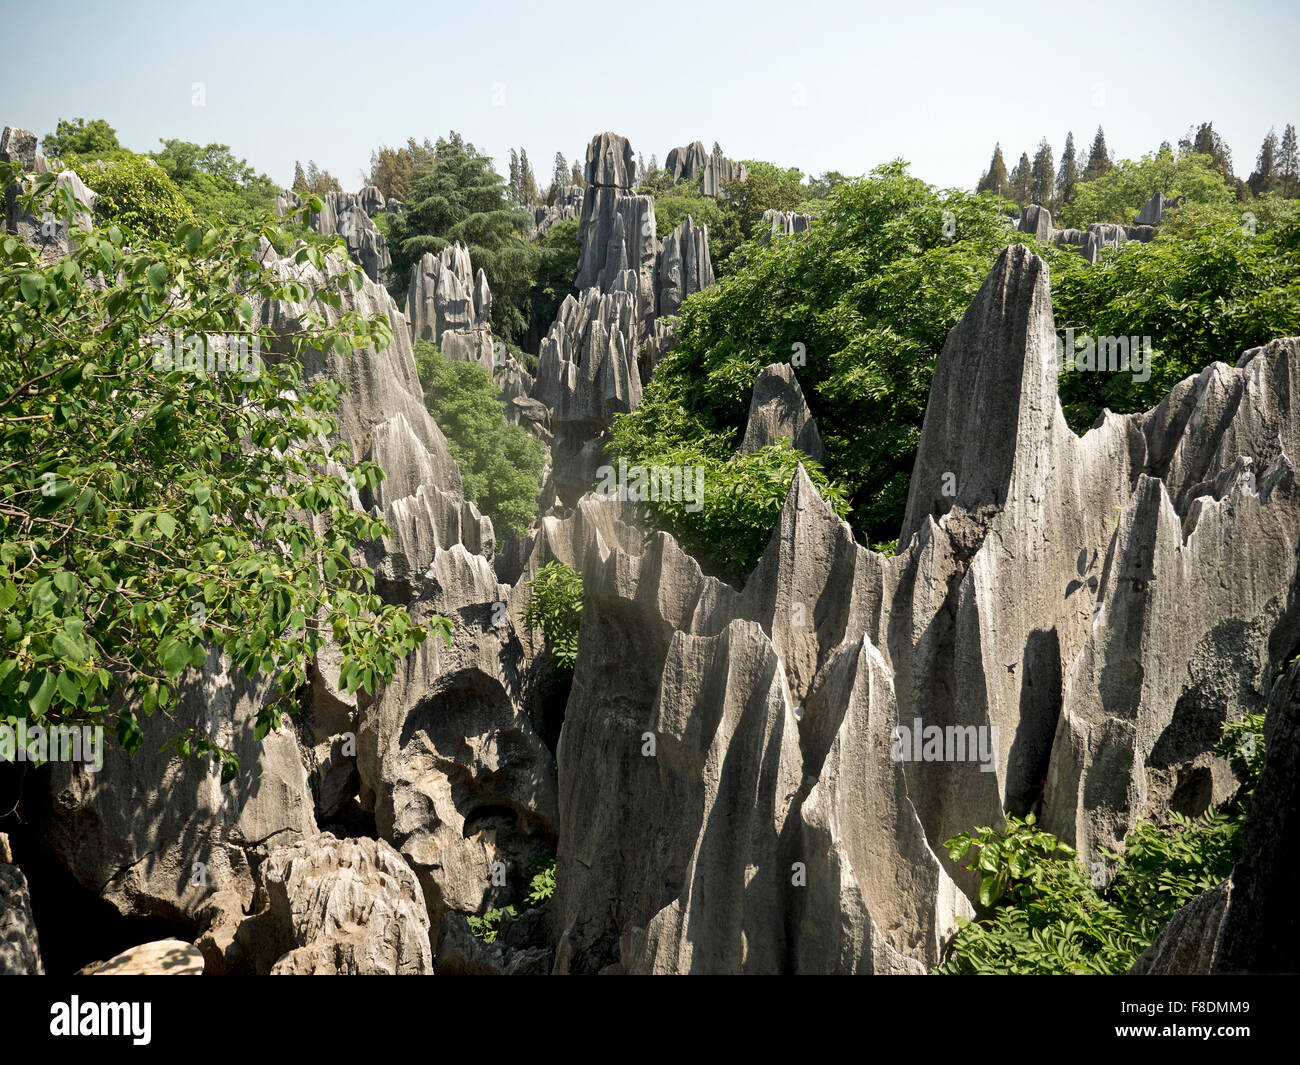 El Bosque de Piedras de Shilin, es un peculiar formación de piedra caliza de Agua de roca erosionada en el condado de Shilin Yi autónoma china Yunnan Foto de stock